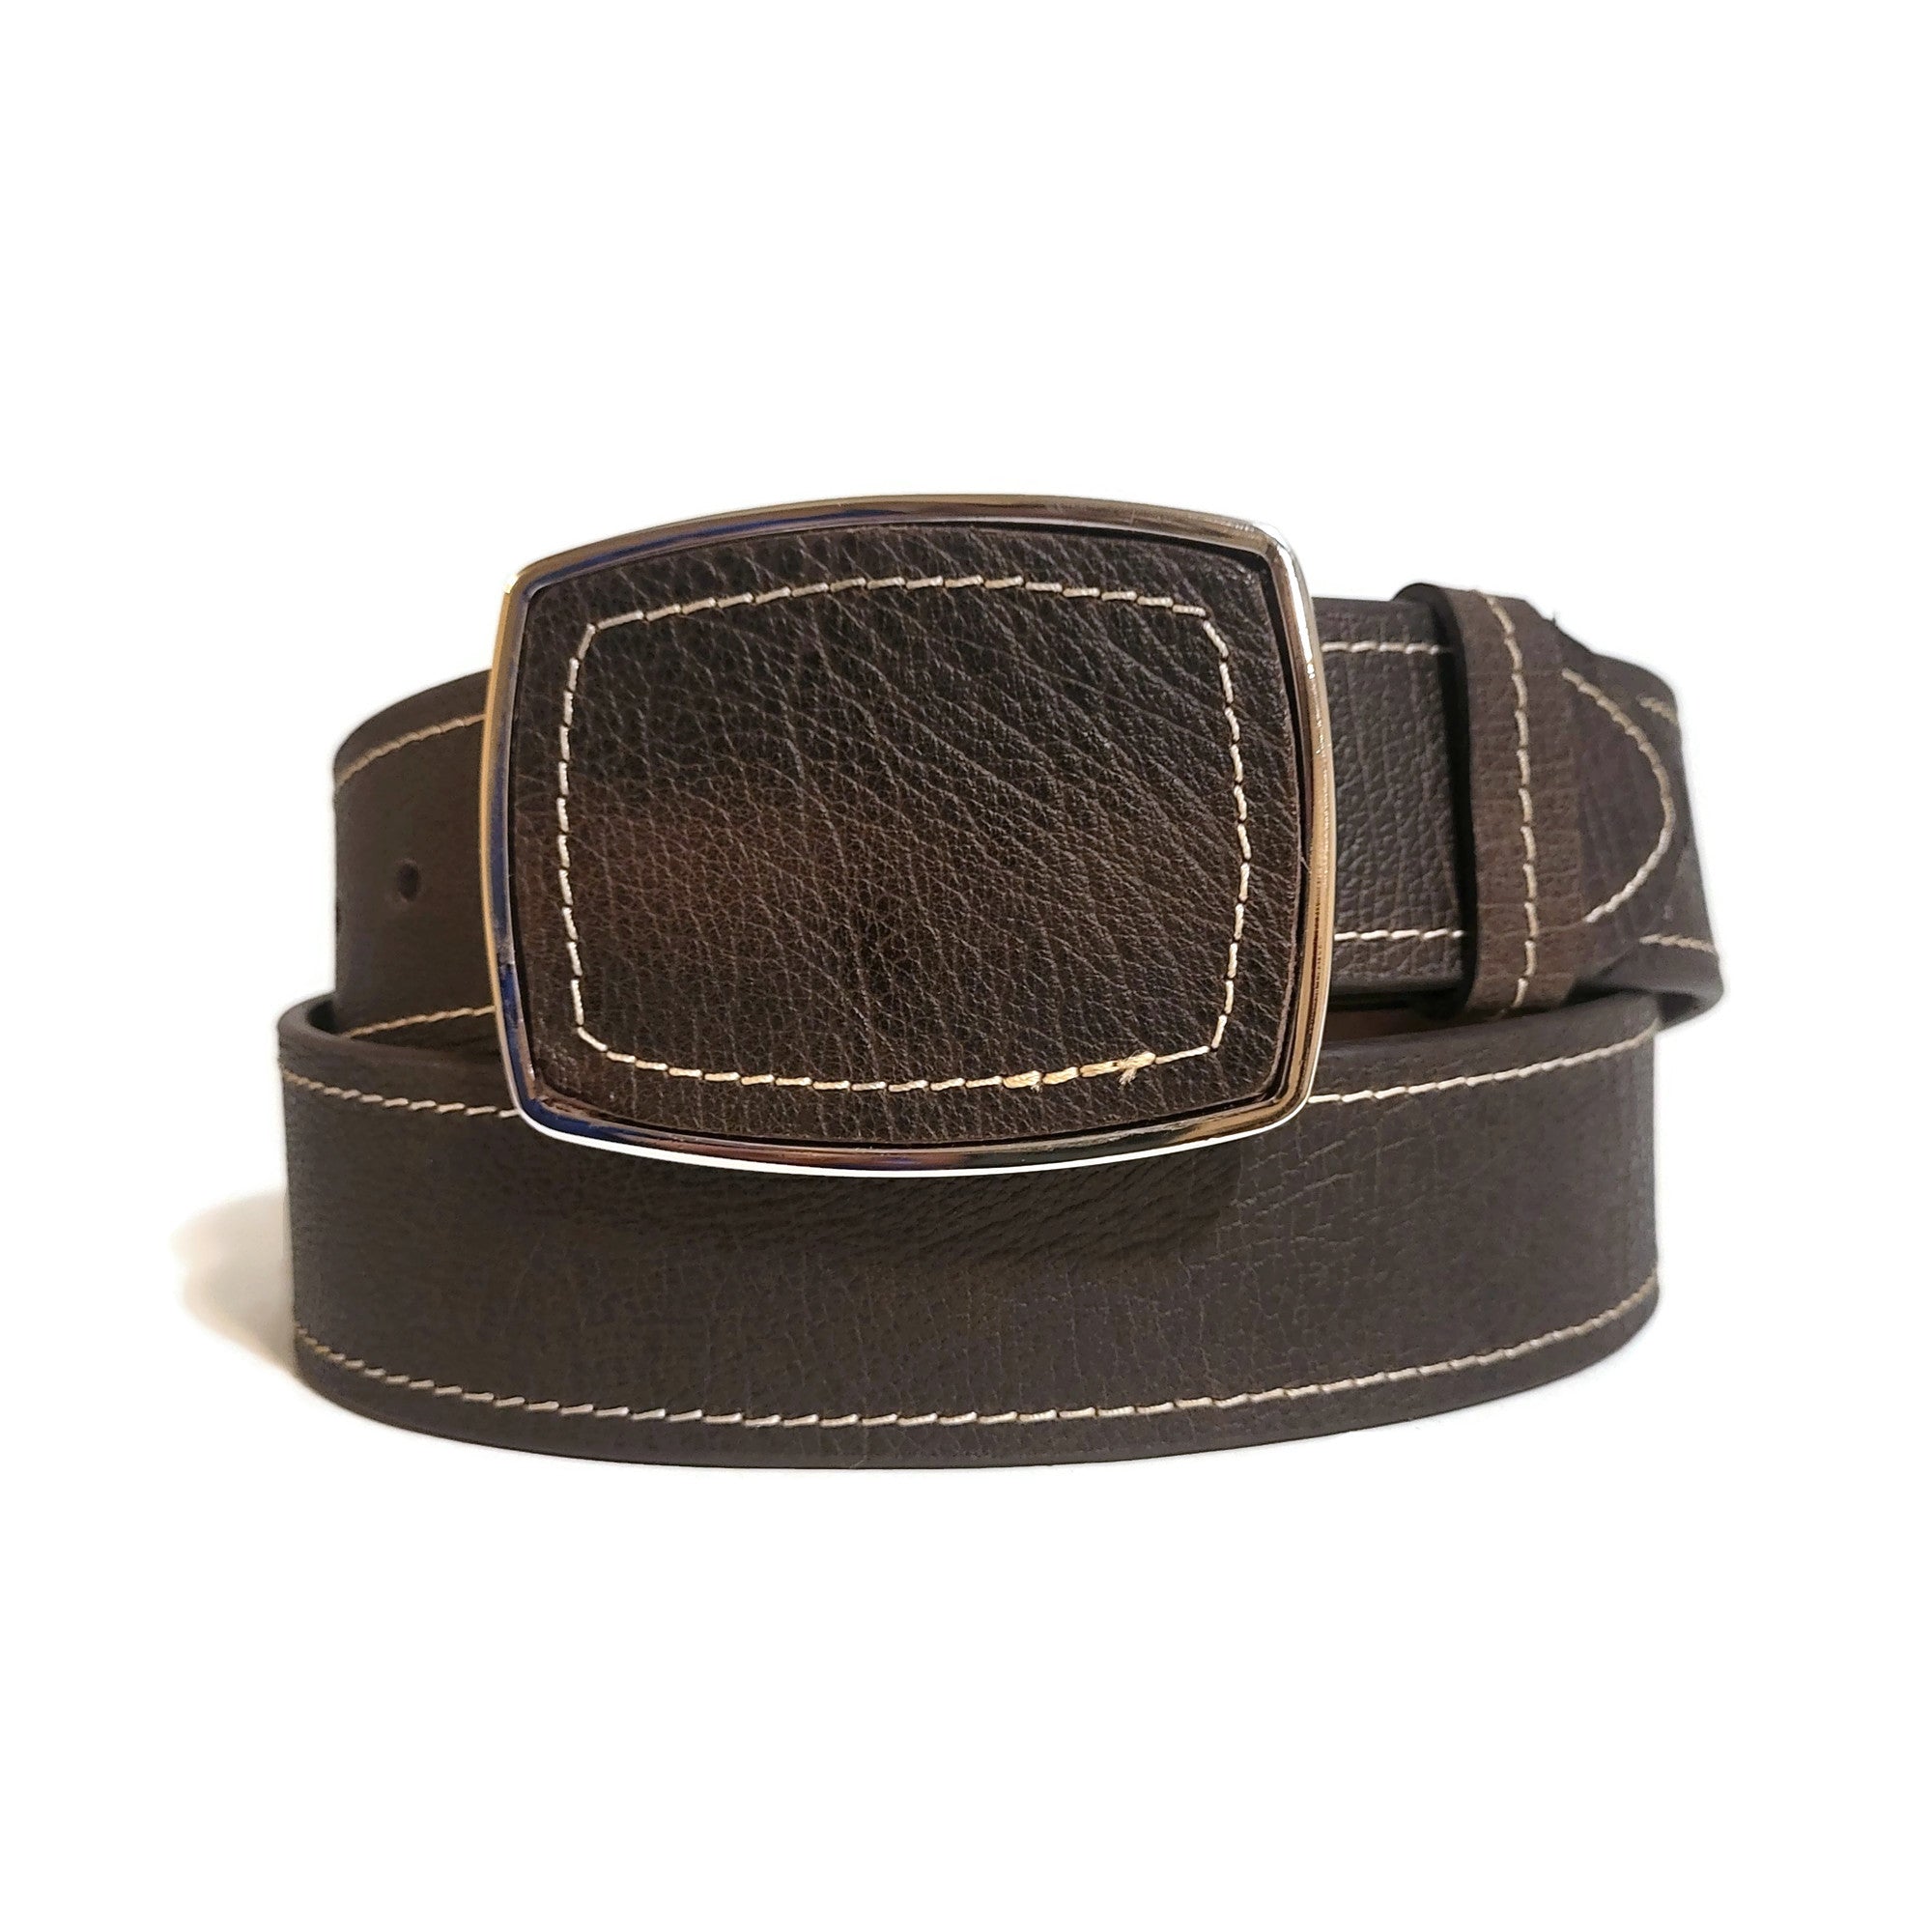 Cinturón de cuero para mujer, cinturón marrón.